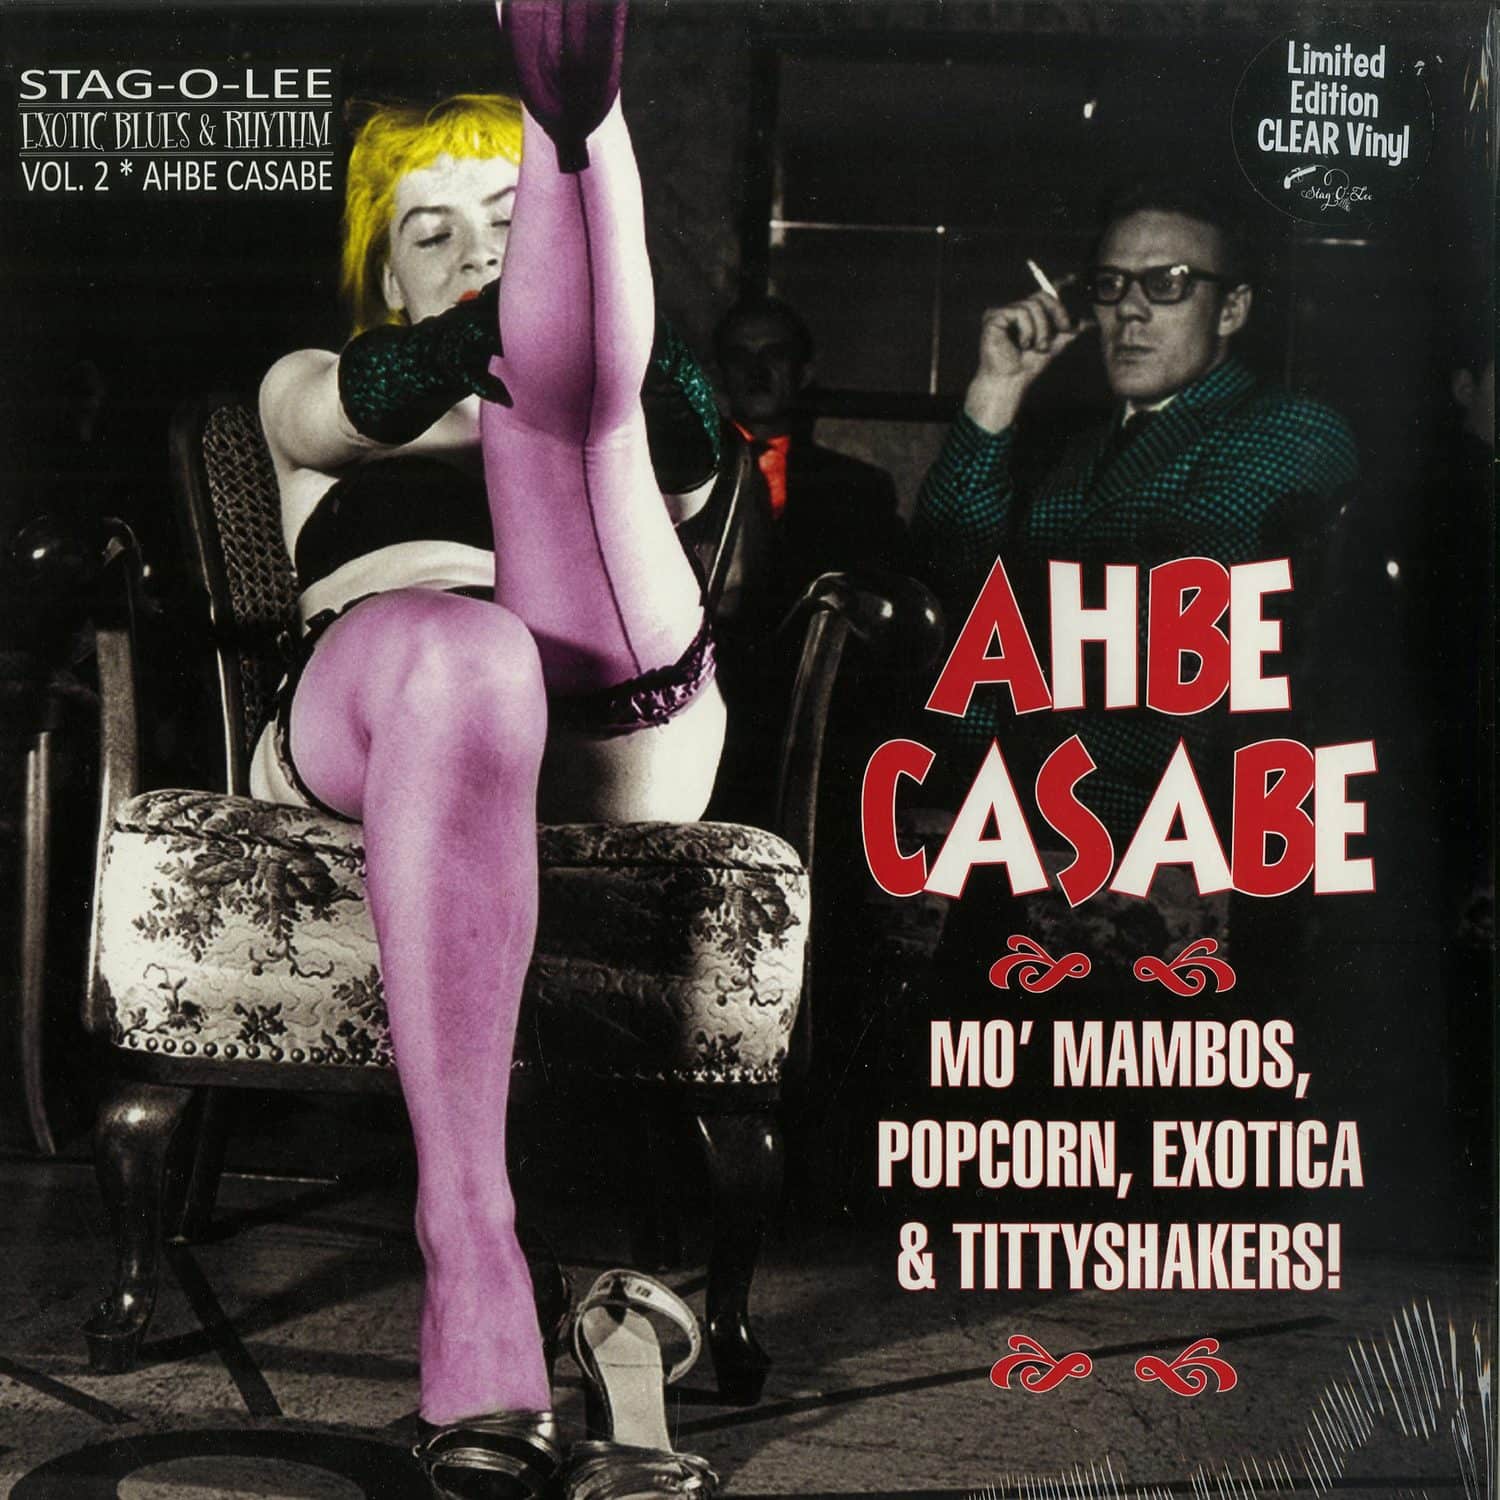 Various Artists - AHBE CASABE: EXOTIC BLUES & RHYTHM VOL. 2 